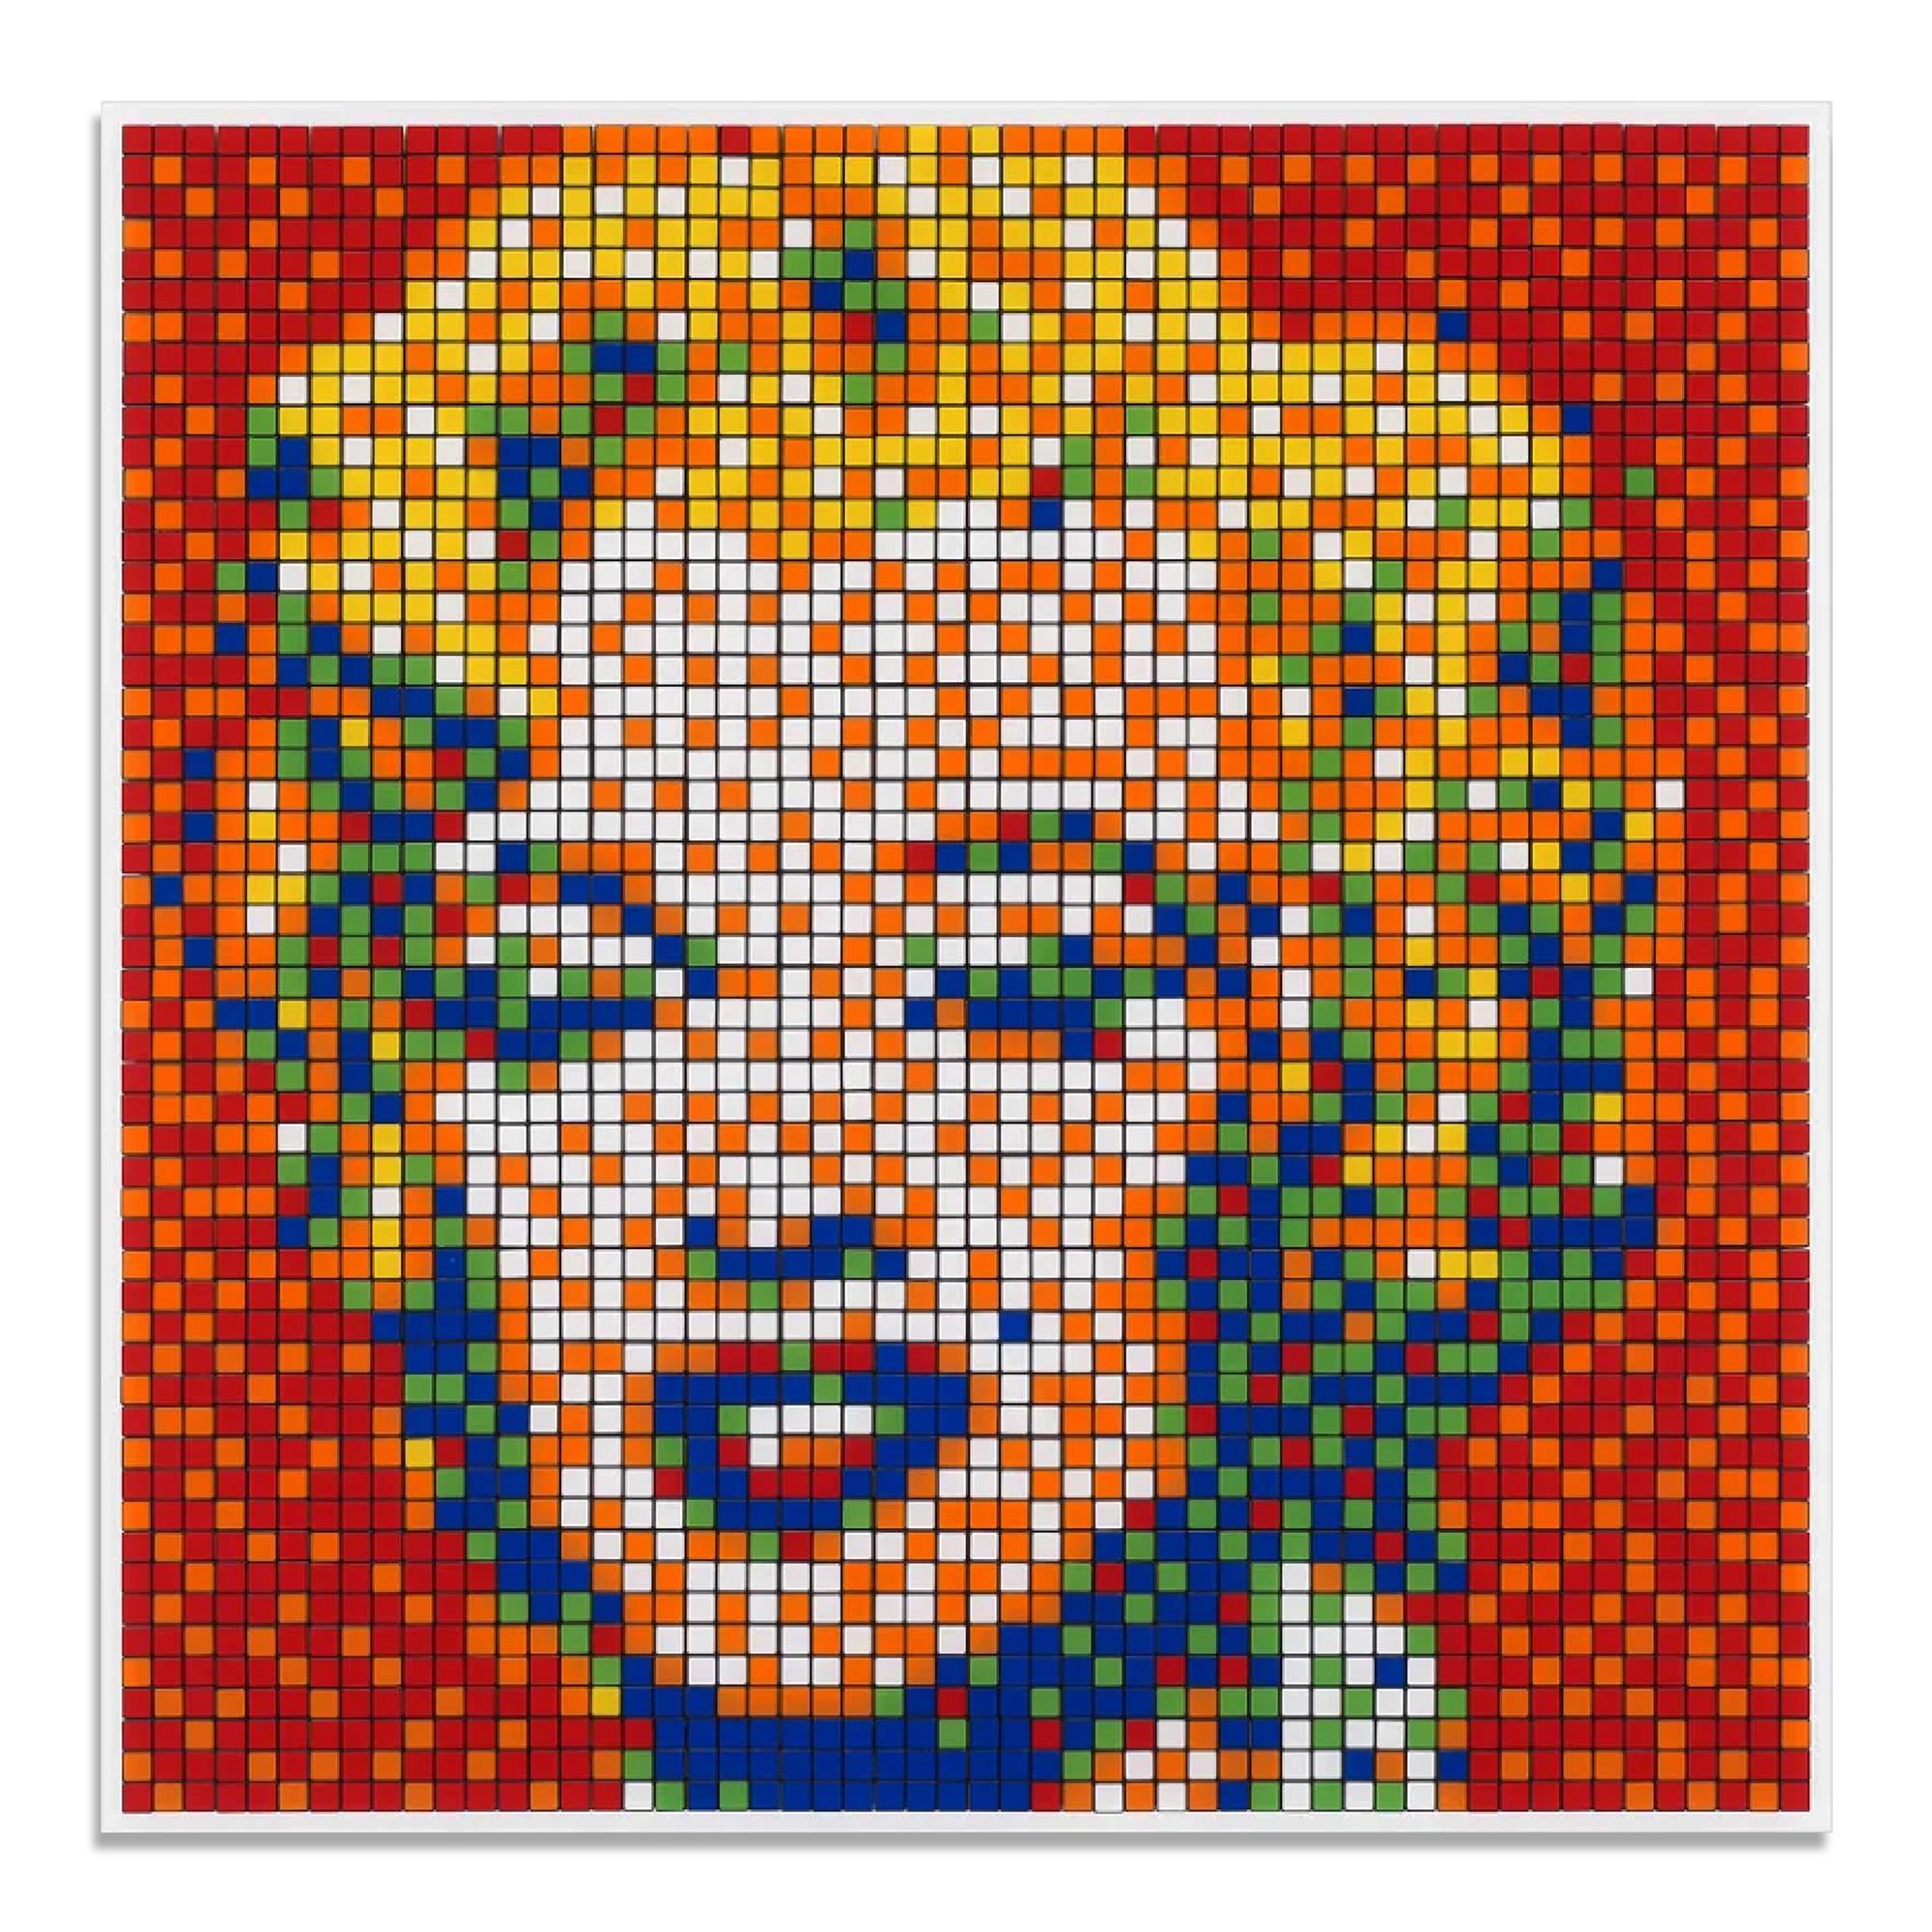 Invader (Französisch, geb. 1969)
Rubik Shot Rot Marilyn (NVDR1-4, 2023
Medium: Giclée-Druck auf Aluminiumverbundplatte mit Diasec-Montage
Abmessungen: 100 x 100 cm (39 2/5 × 39 2/5 in)
Auflage von 431: Handsigniert und nummeriert auf einem